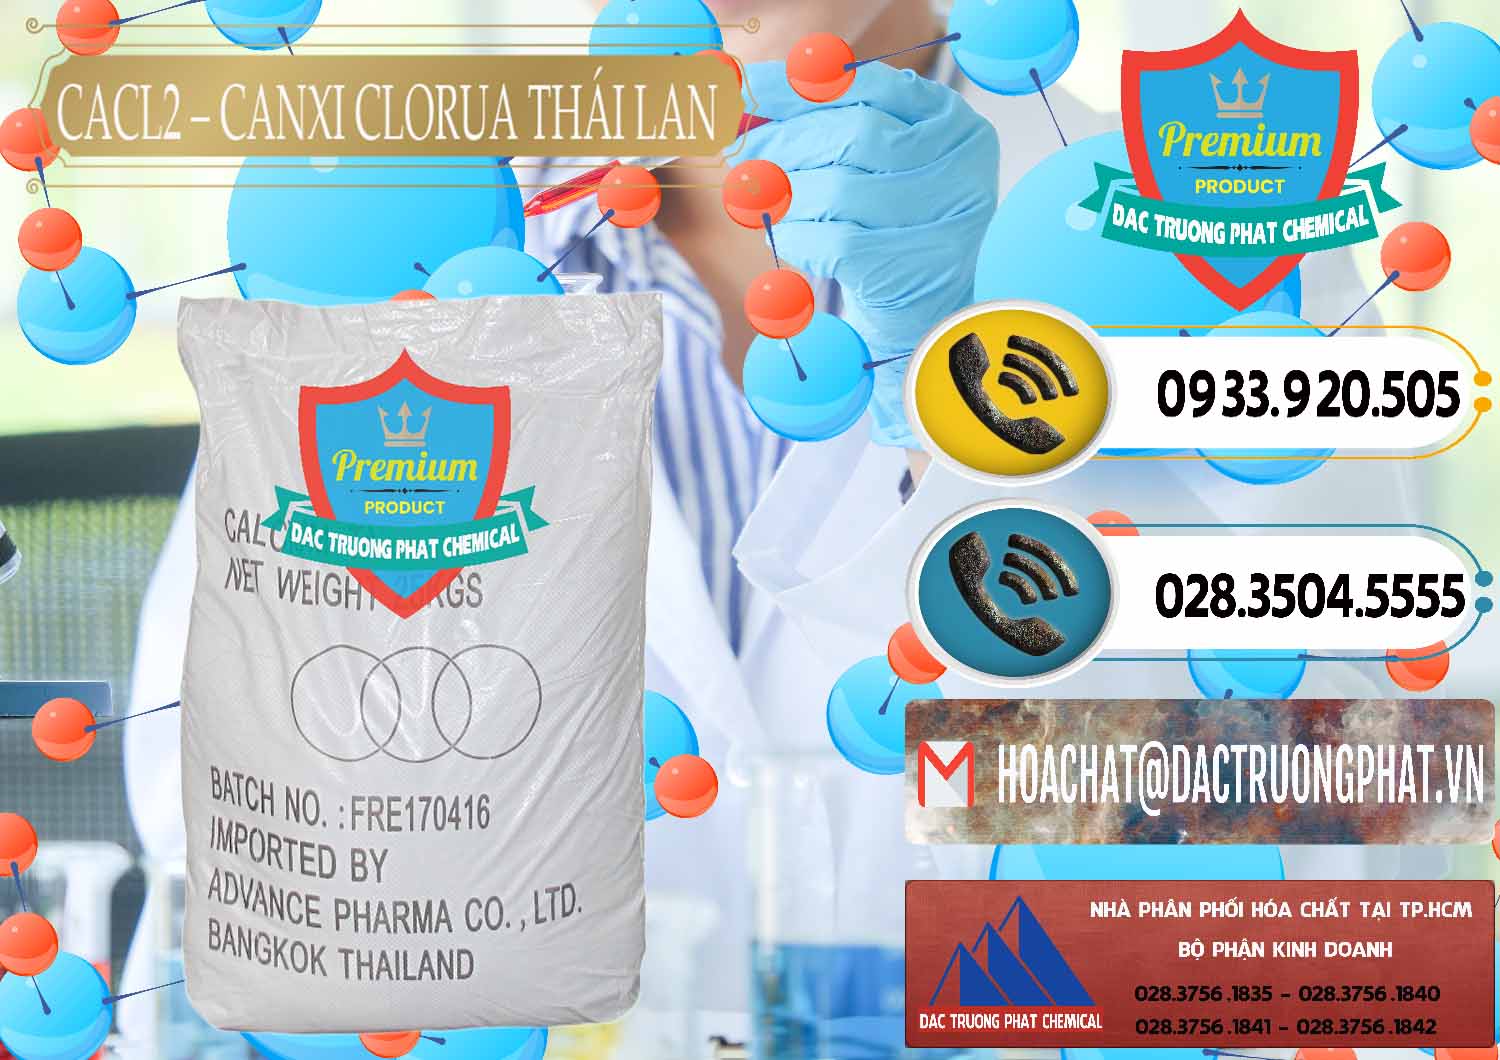 Cty chuyên nhập khẩu và bán CaCl2 – Canxi Clorua 96% Thái Lan - 0042 - Cty chuyên kinh doanh & phân phối hóa chất tại TP.HCM - hoachatdetnhuom.vn